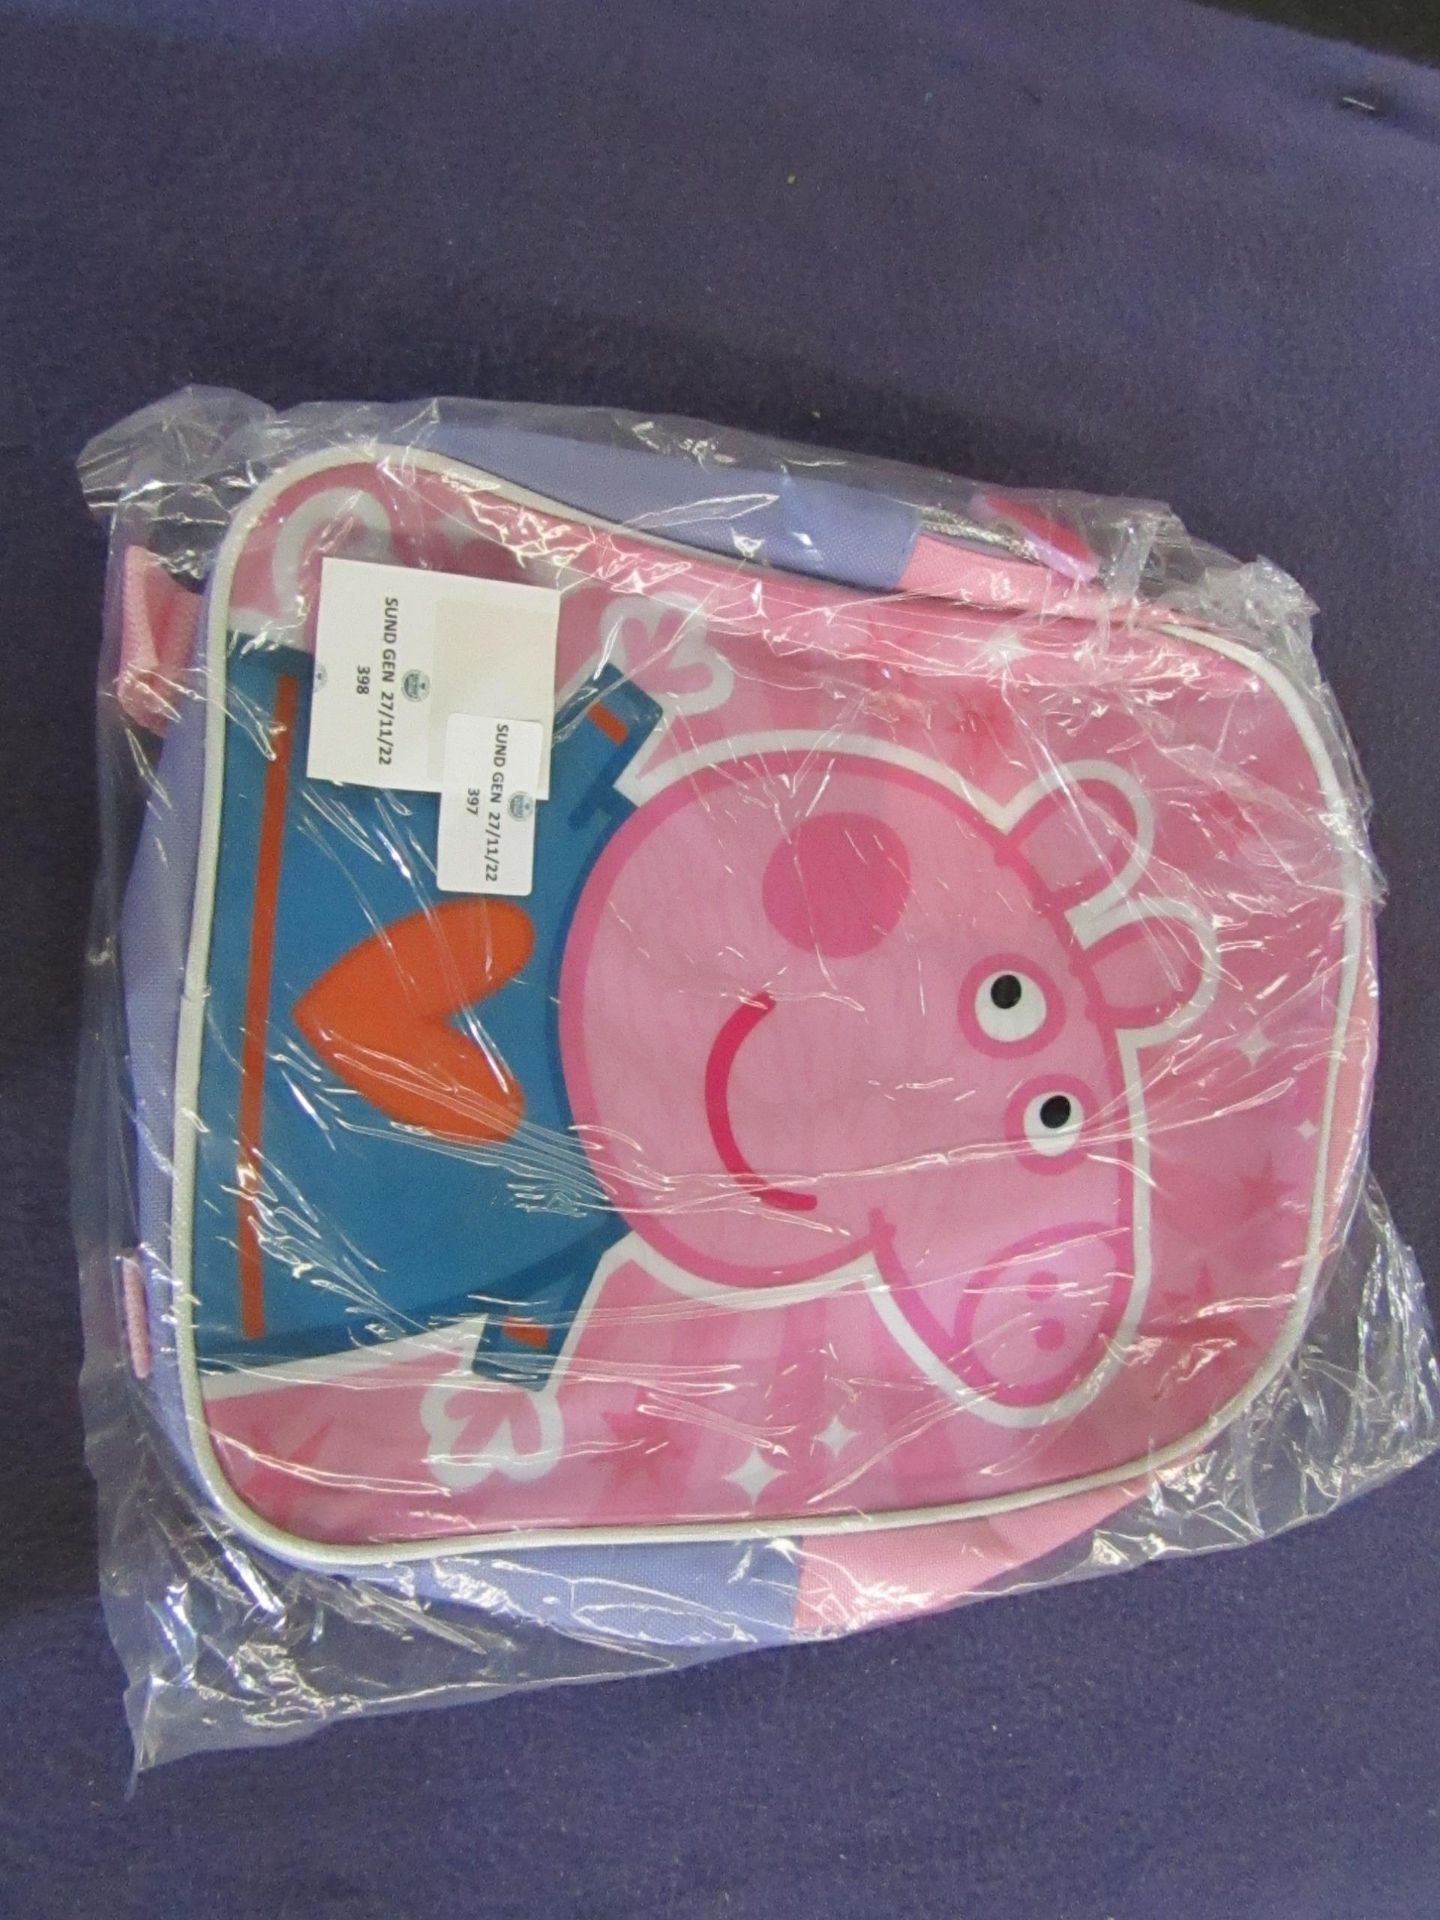 Peppa Pig - Backpack - Unused & Packaged.